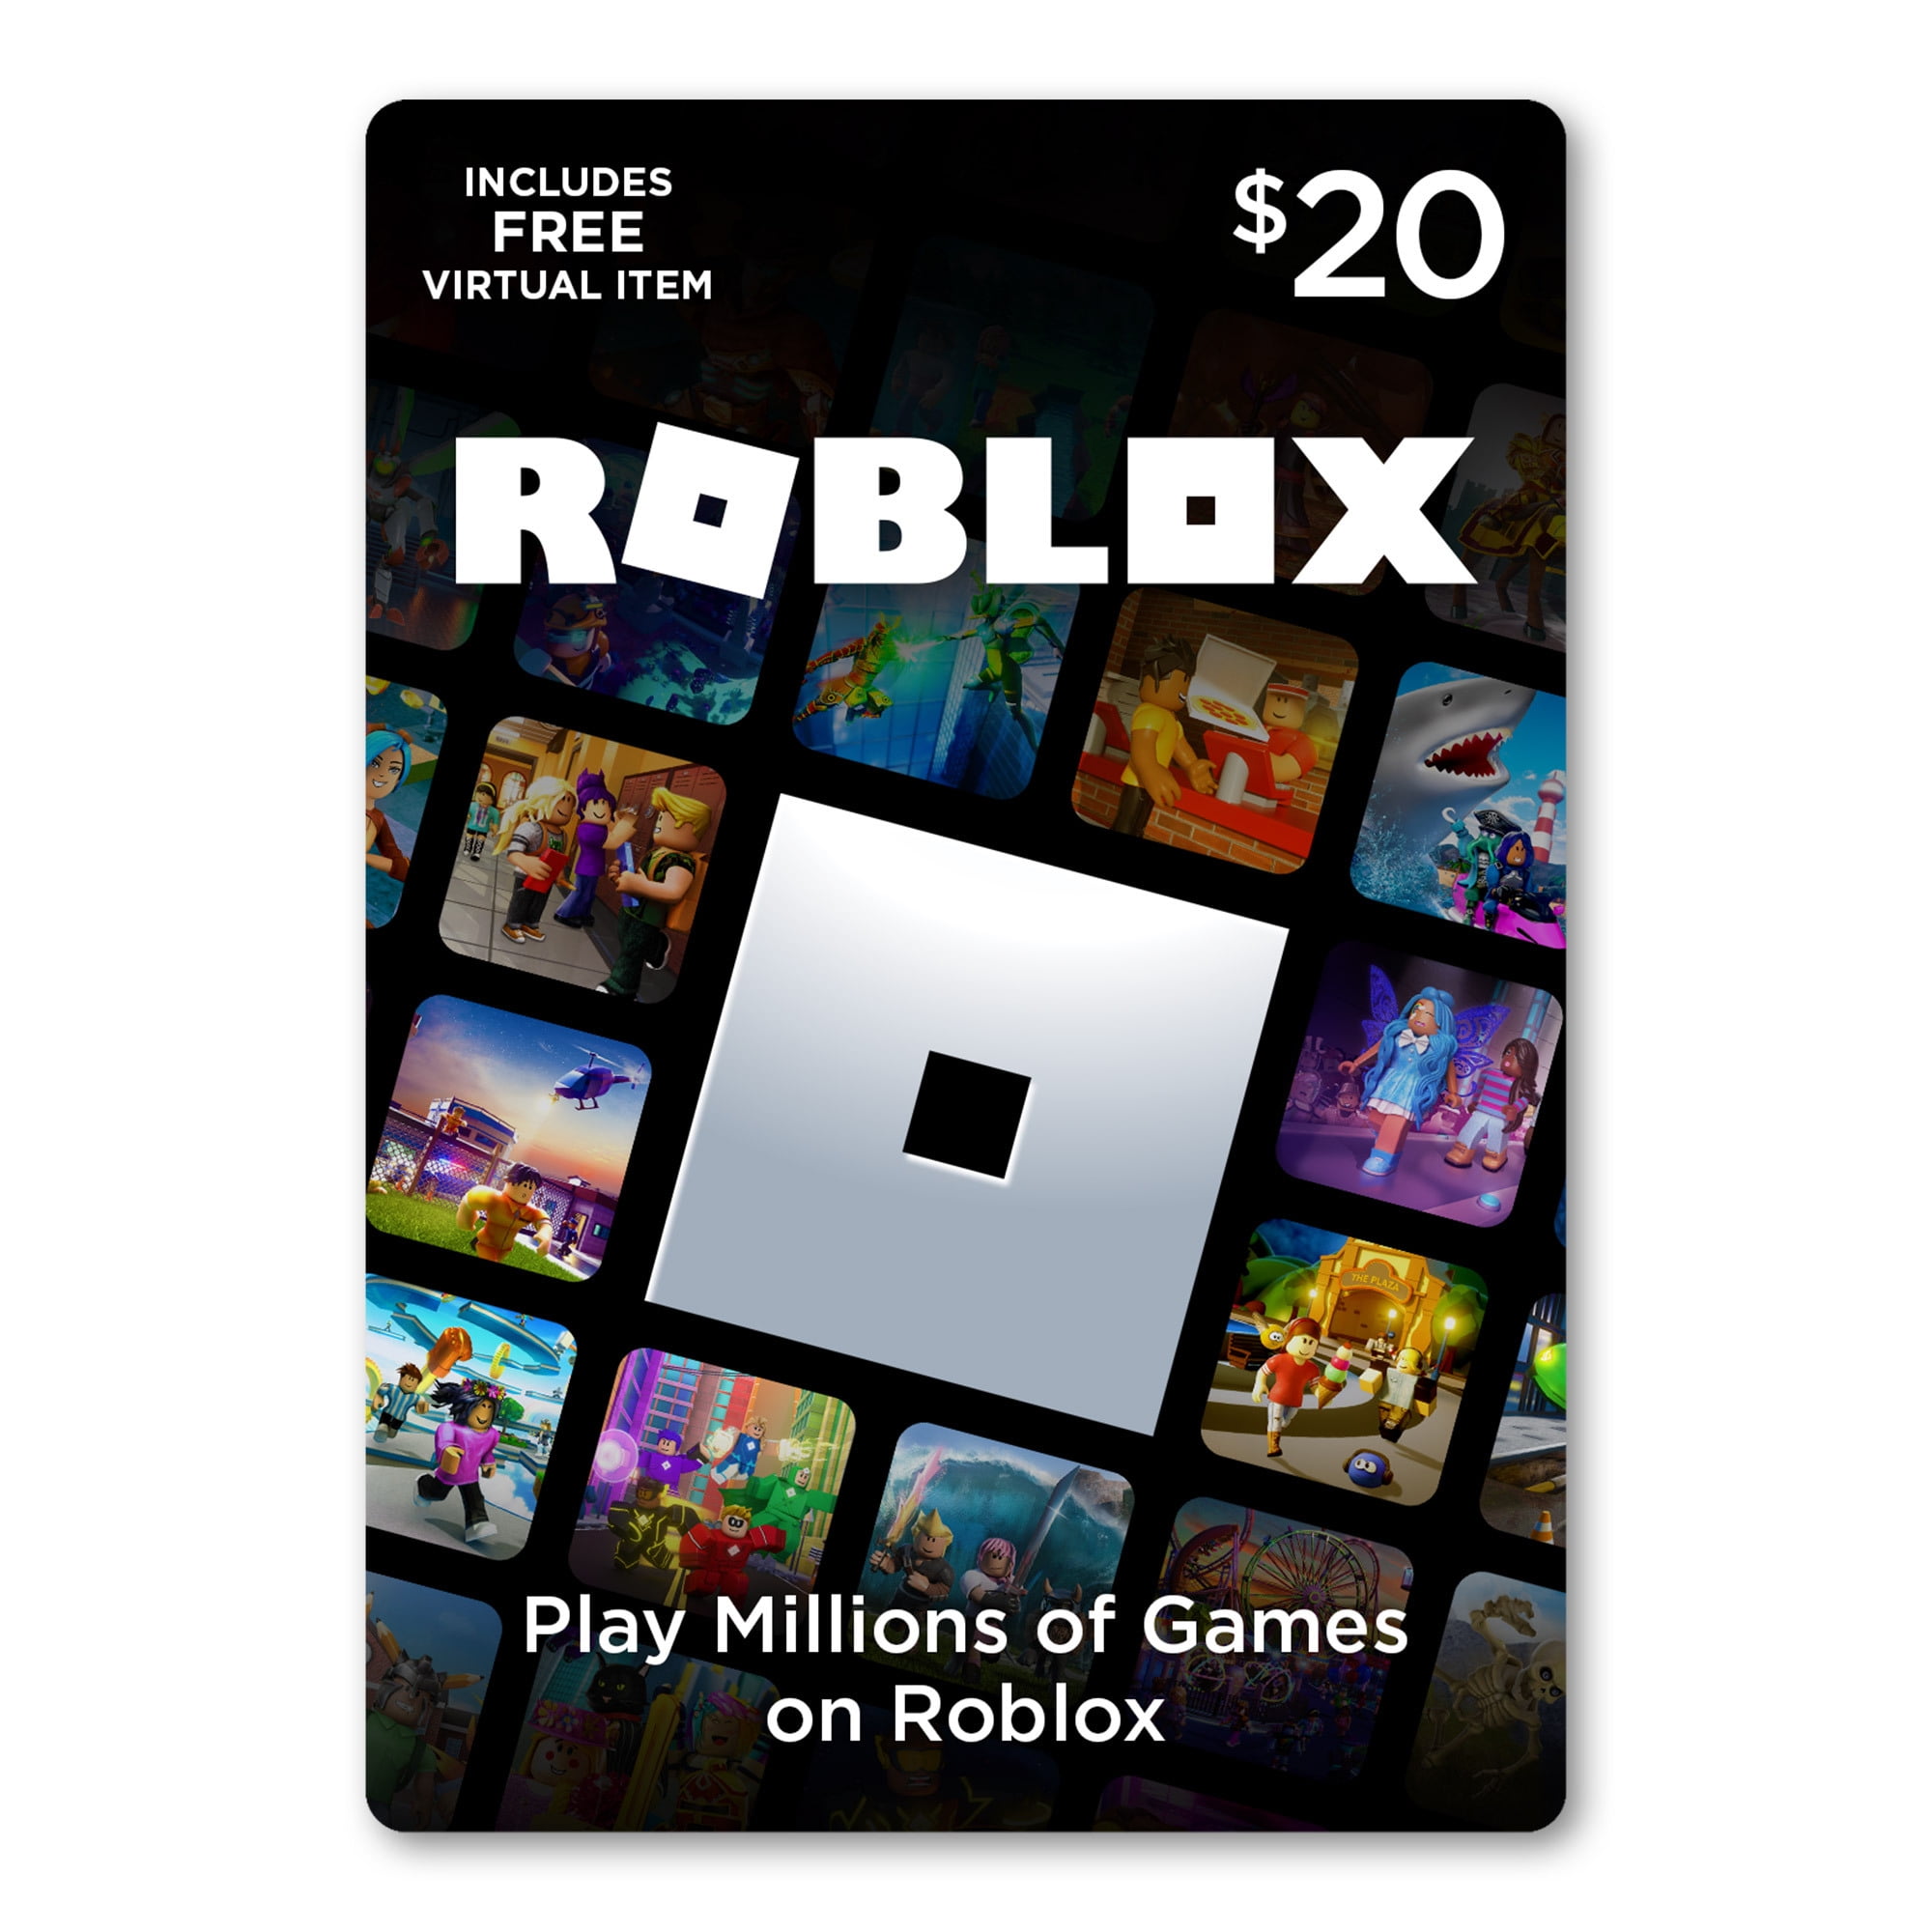 Roblox 20 Digital Gift Card Includes Exclusive Virtual Item Digital Download Walmart Com Walmart Com - 20000 robux